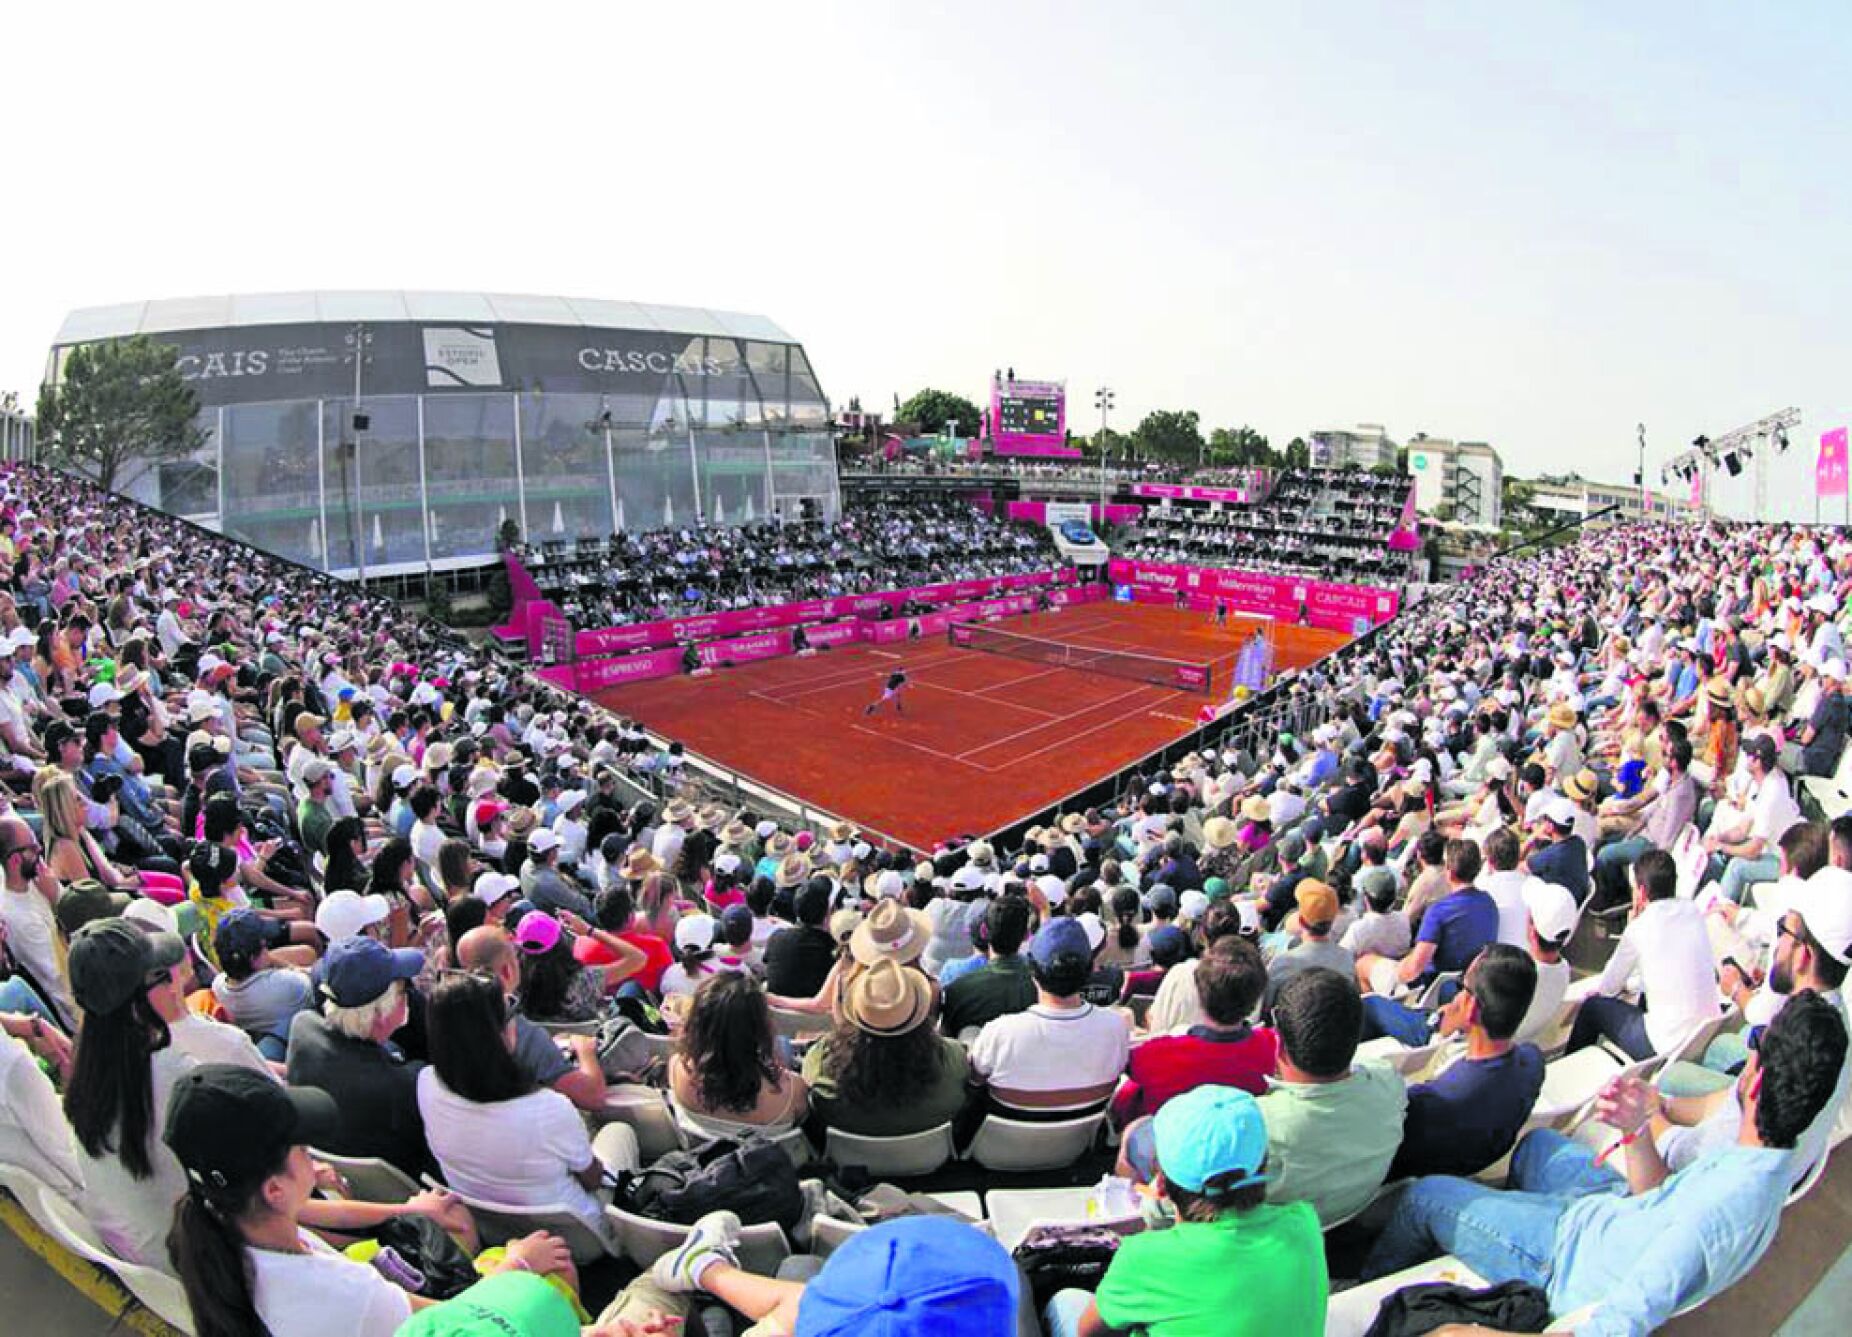 Vários torneios ATP 250 terão sido transferidos ou eliminados a partir de  2025 mas os rumores sobre o Estoril Open foram desmentidos